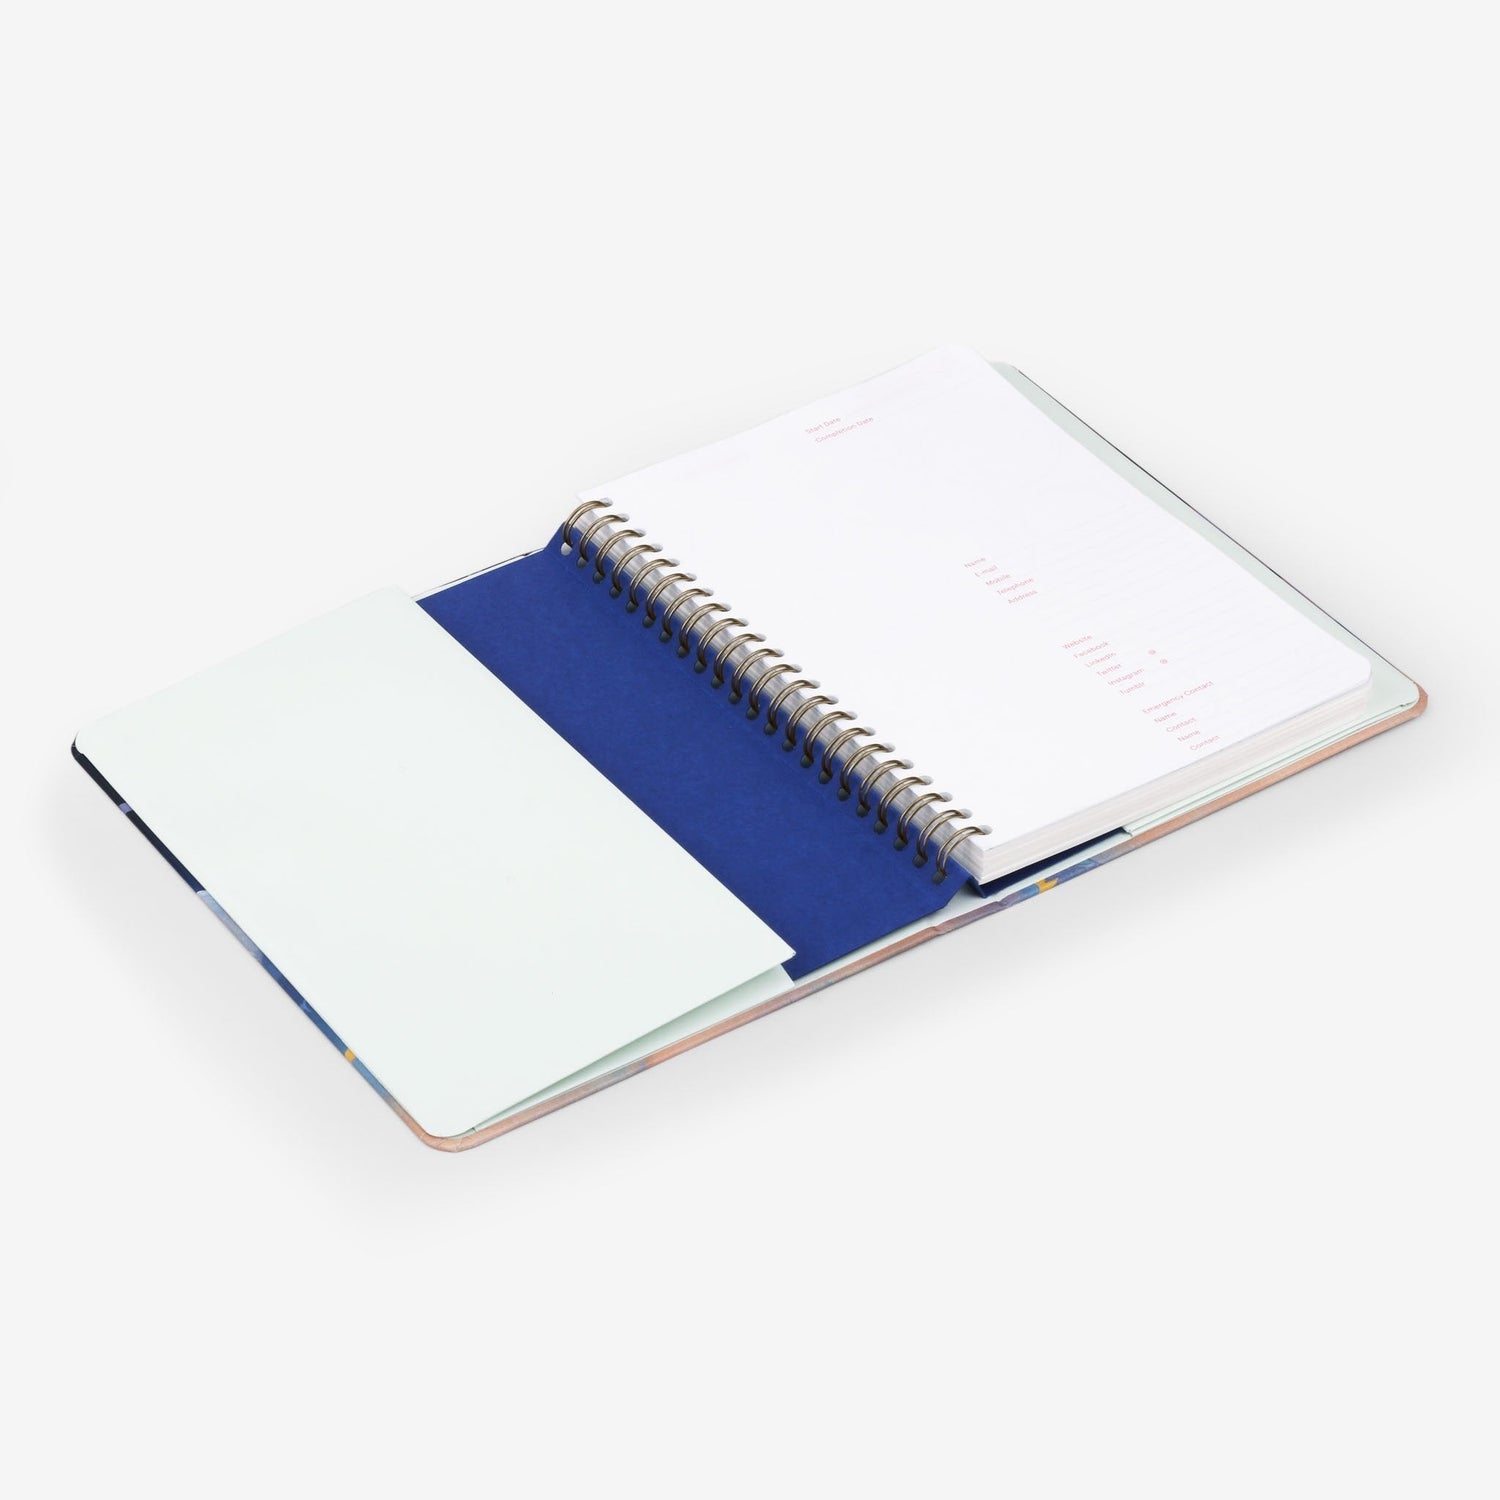 Birch Forest Wirebound Notebook